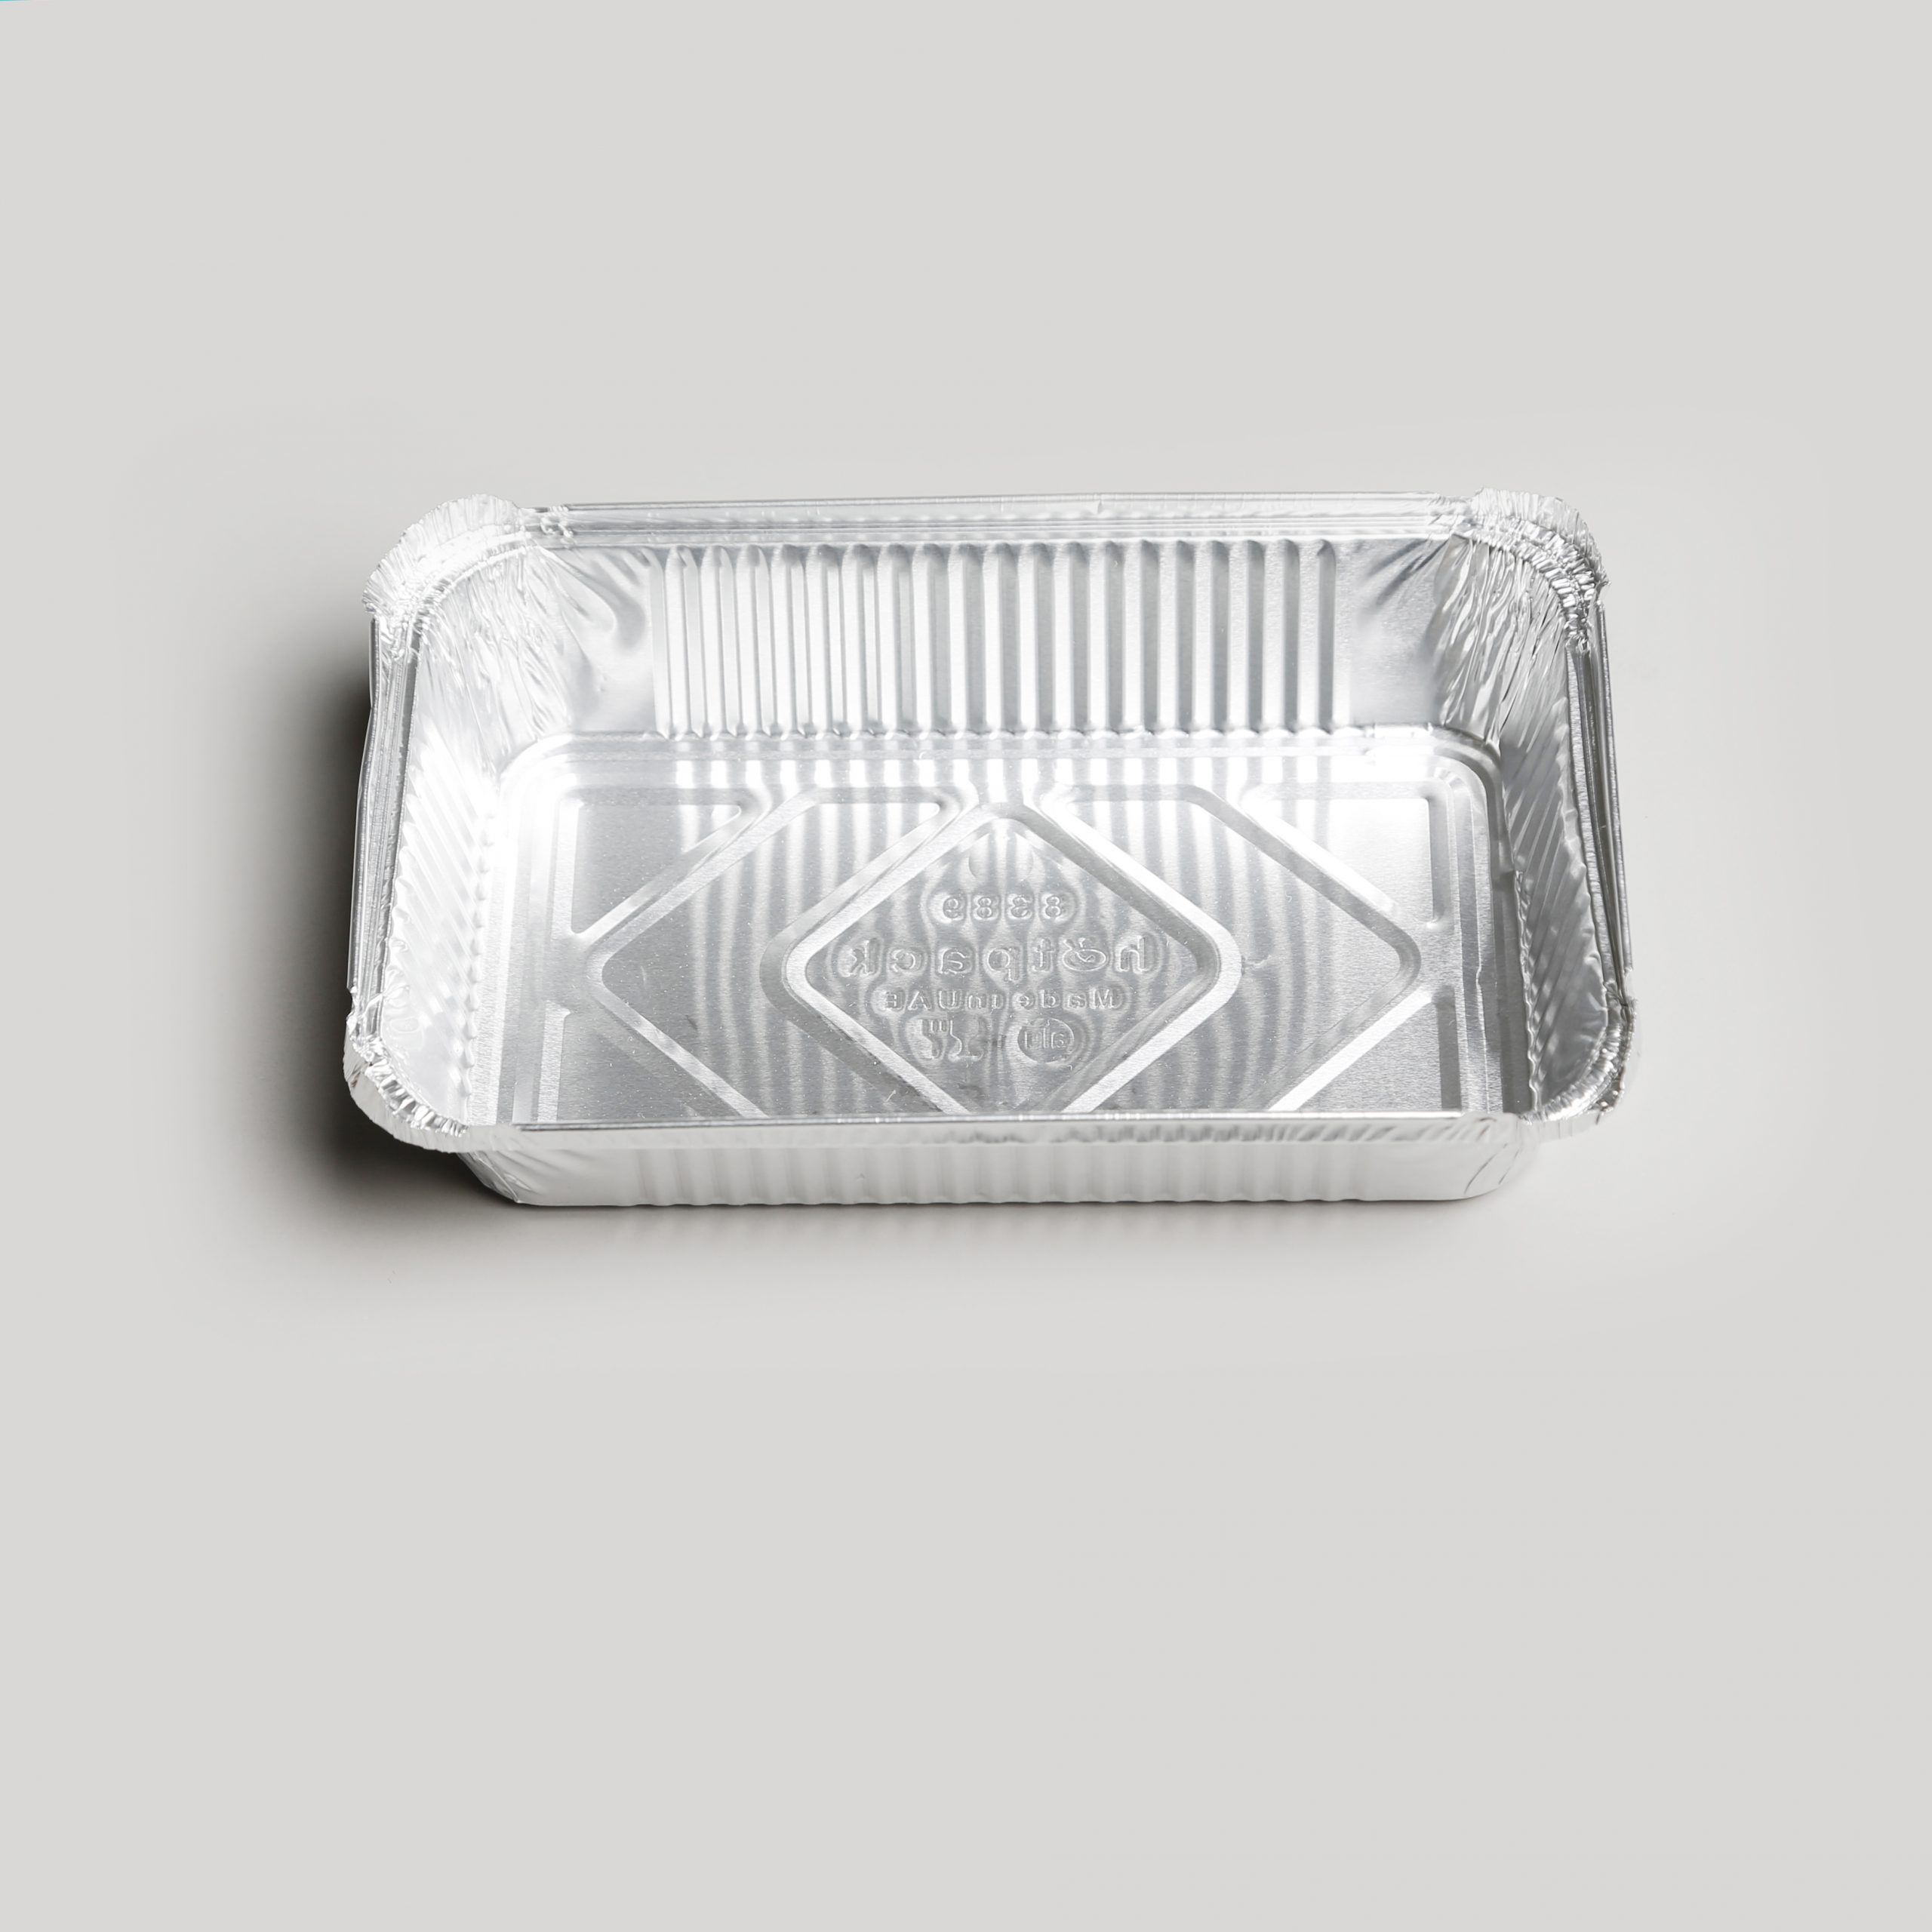 Barquette rectangulaire en aluminium – 670ml – Hotpack Global Maroc